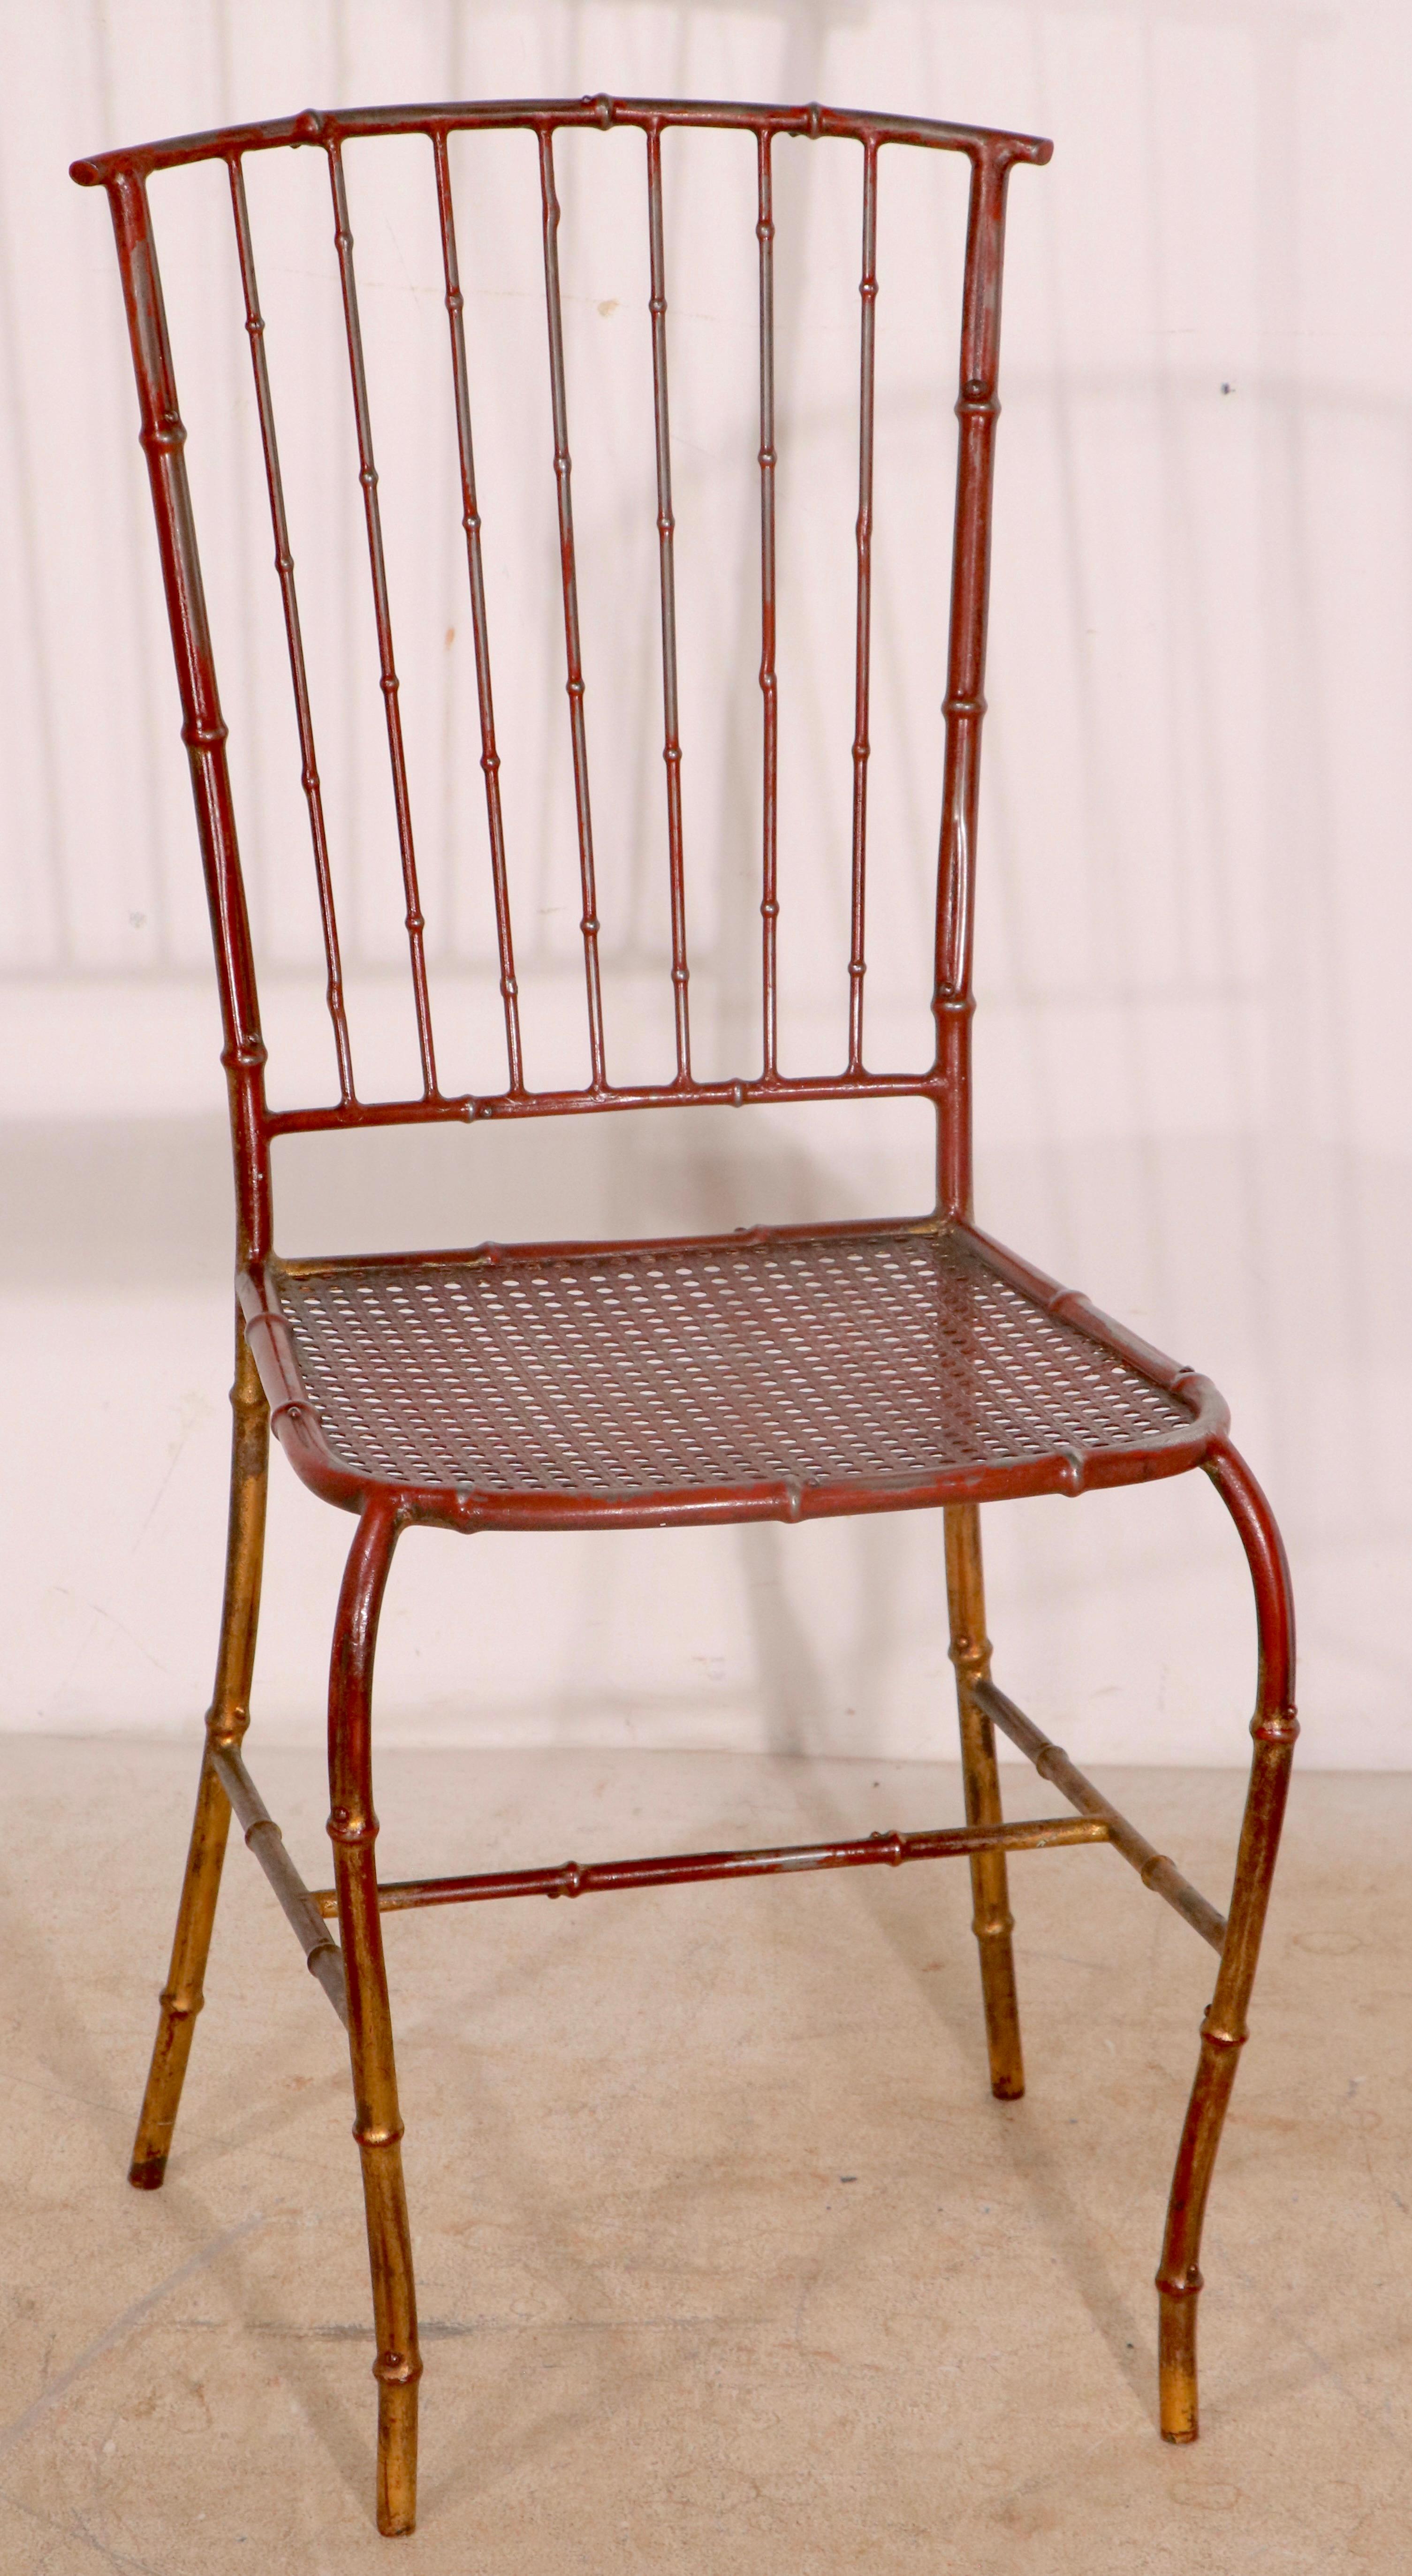 Voguish Metall-Café-Stuhl mit einer faux Bambus Metallrahmen, und Metall-Netz Sitz. Der Stuhl ist in seiner ursprünglichen rot/goldenen Lackierung, er ist strukturell gesund und stabil, sauber und einsatzbereit. 
Dieser Stuhl ist sowohl für den